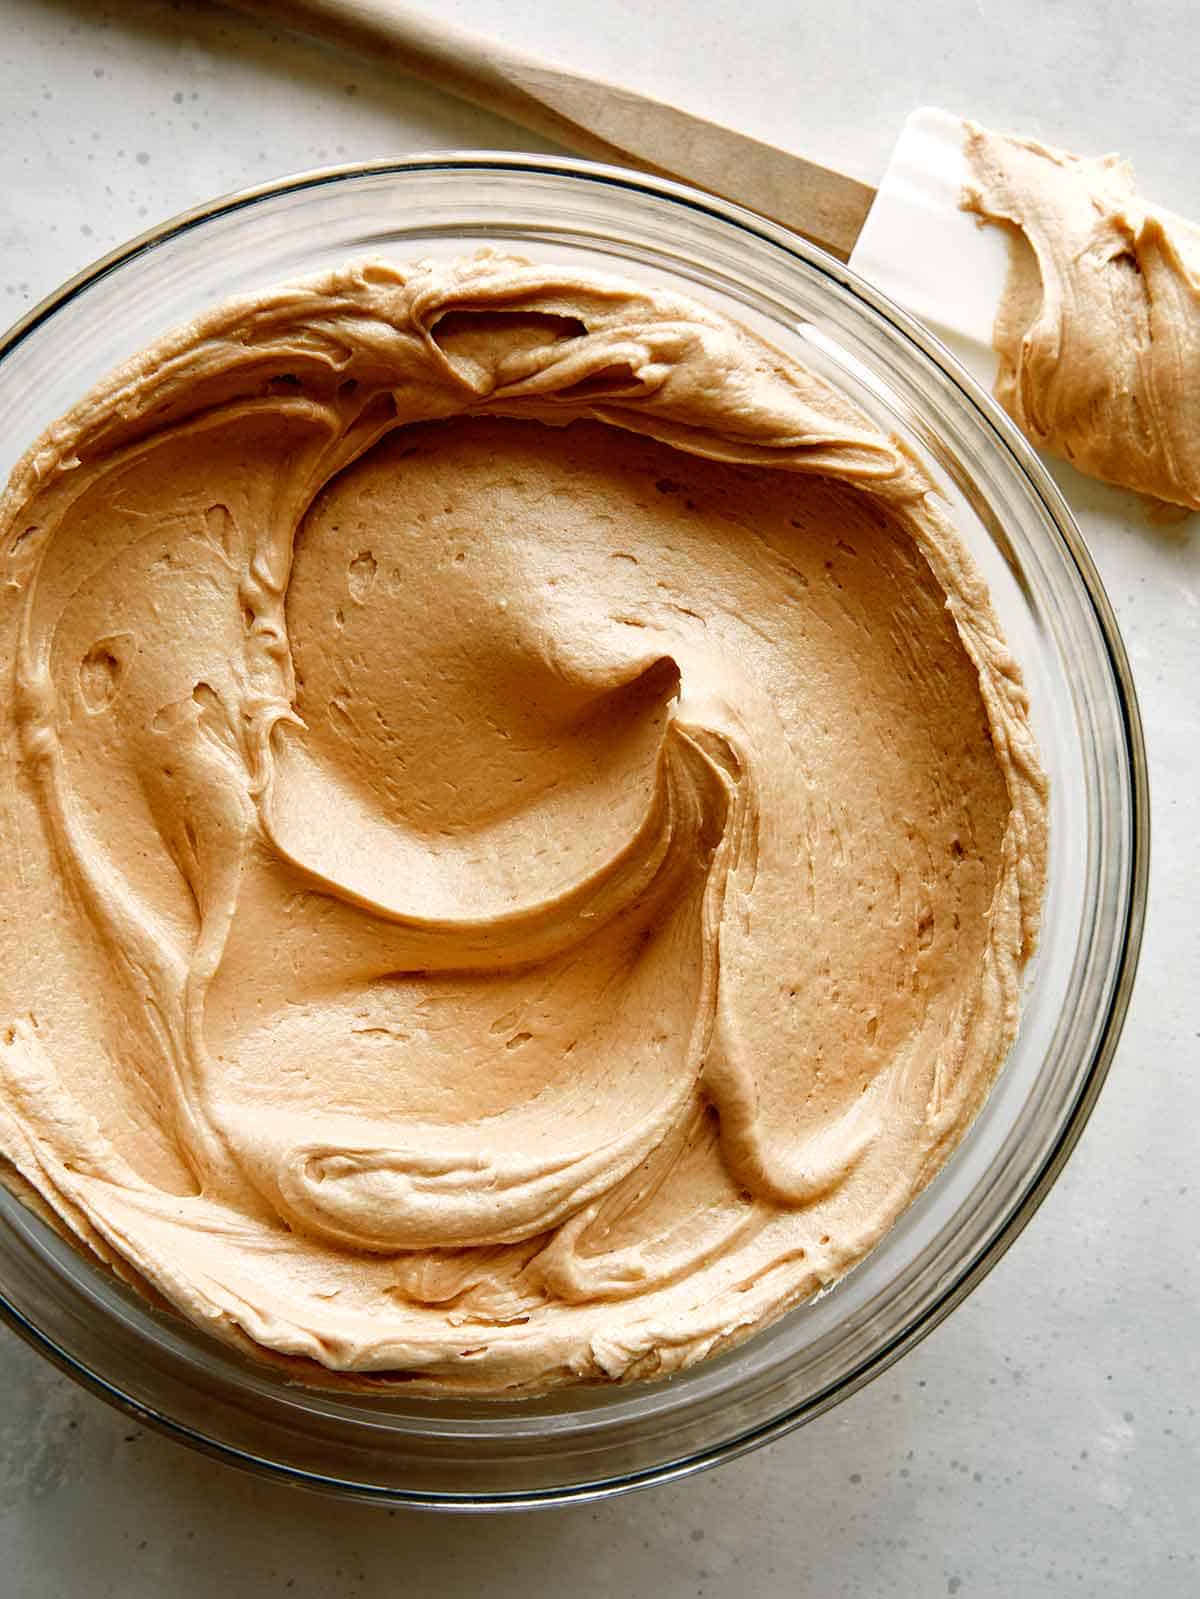 https://www.spoonforkbacon.com/wp-content/uploads/2022/06/peanut-butter-frosting-recipe.jpg